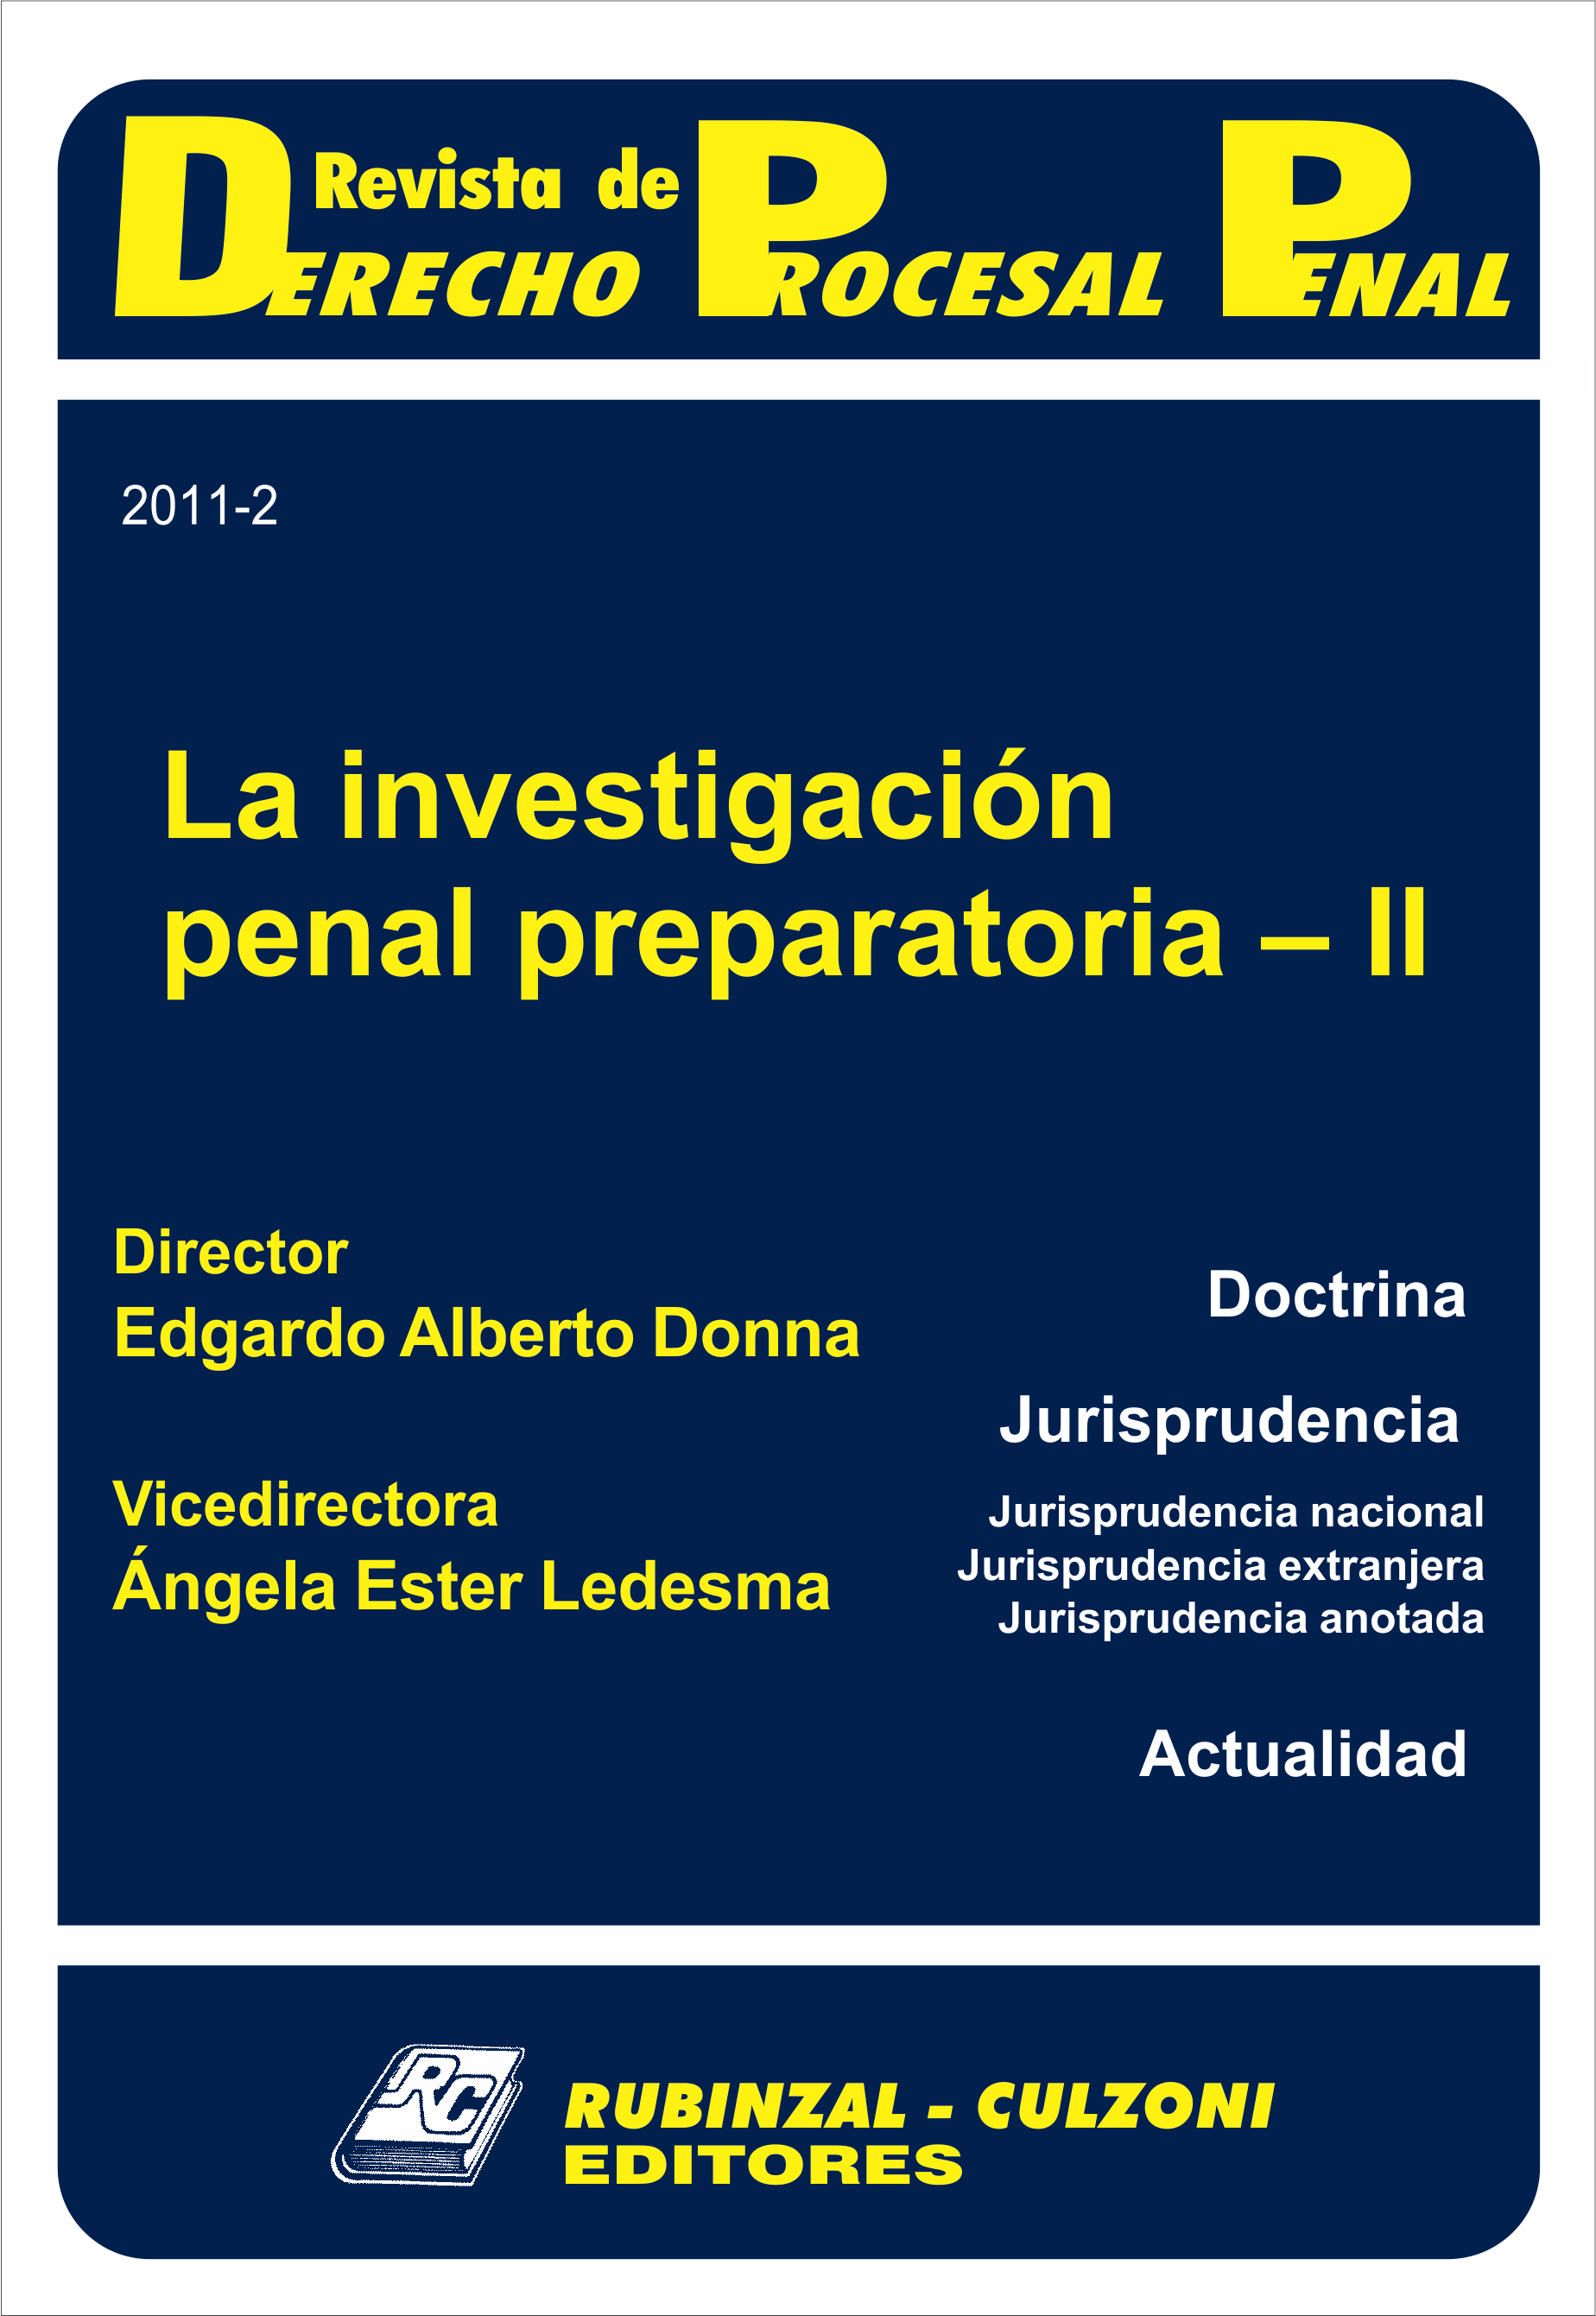 Revista de Derecho Procesal Penal - La investigación penal preparatoria - II.